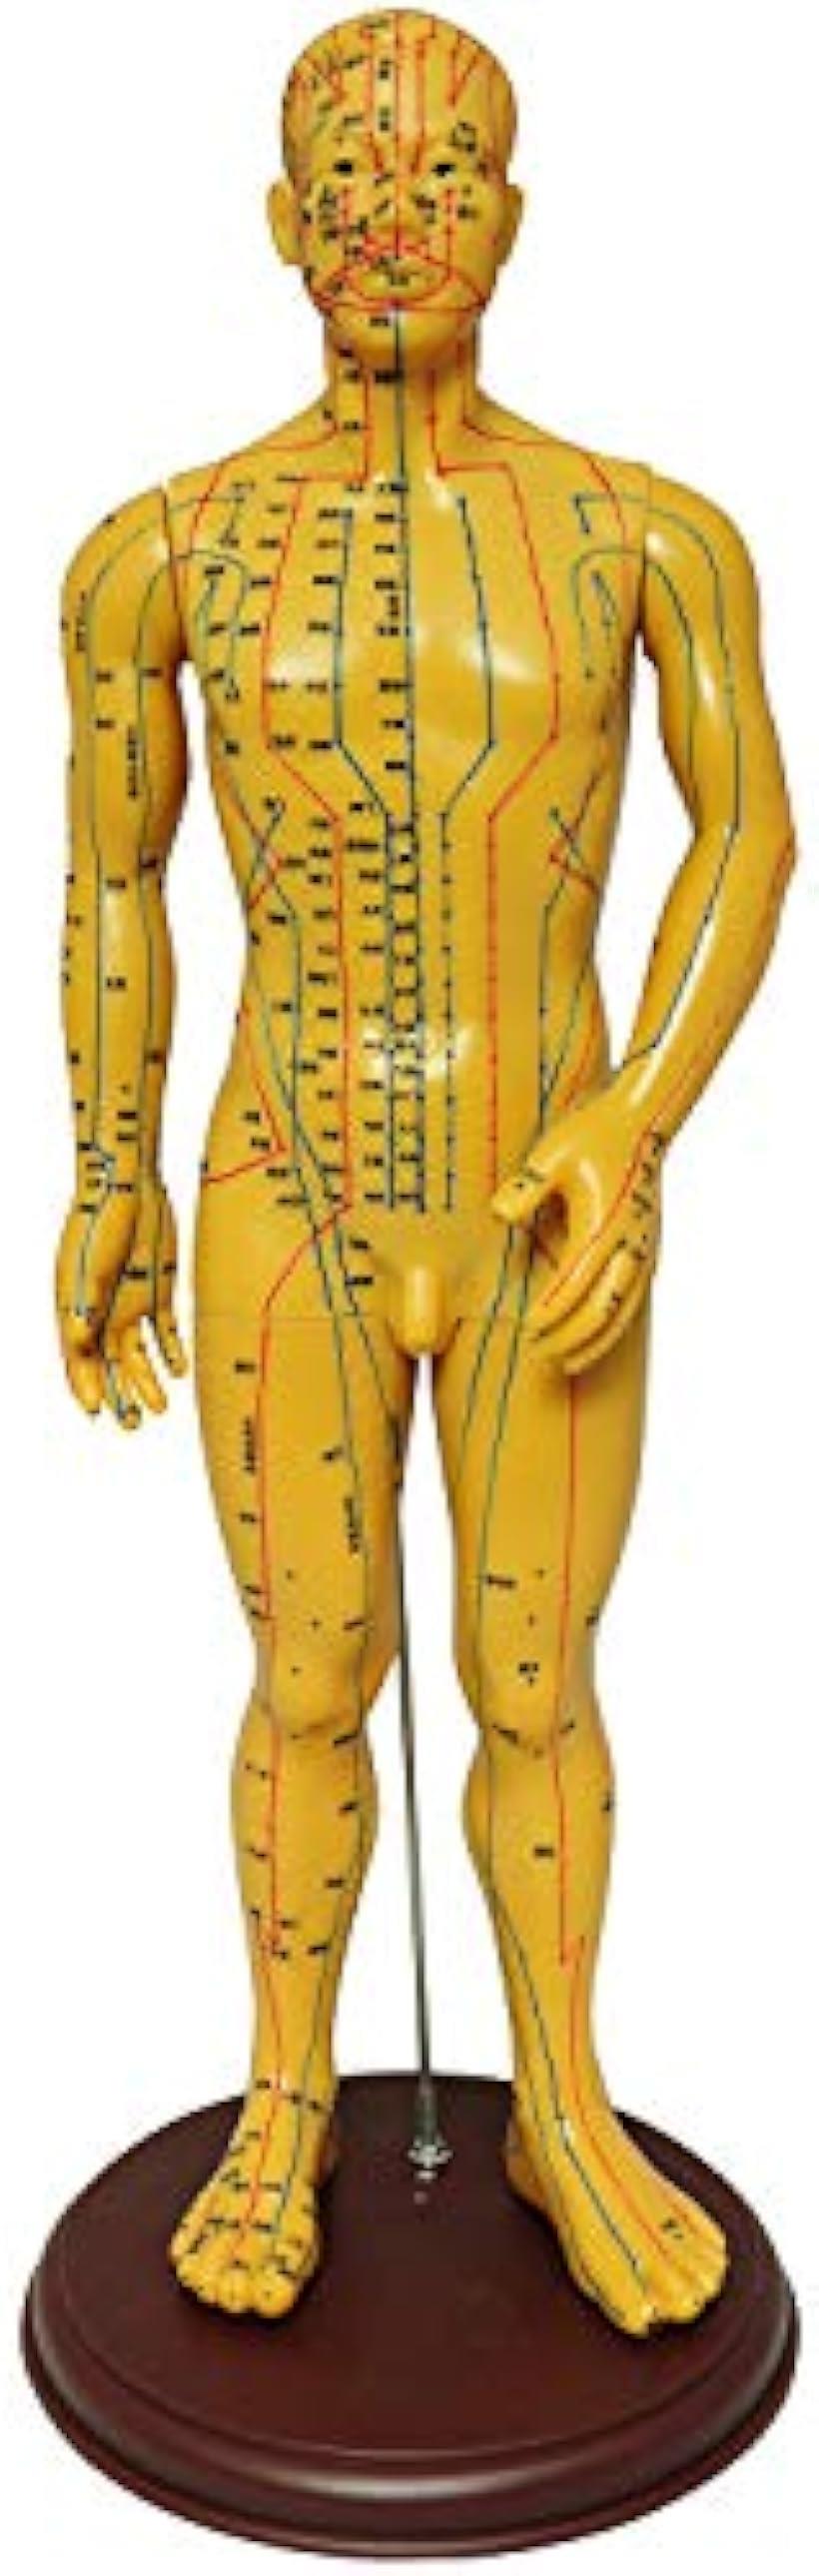 人体模型 ツボ 針灸 鍼灸経穴模型 経絡 モデル 整体 マッサージ 学習用 52.5cm 男性( 男性)